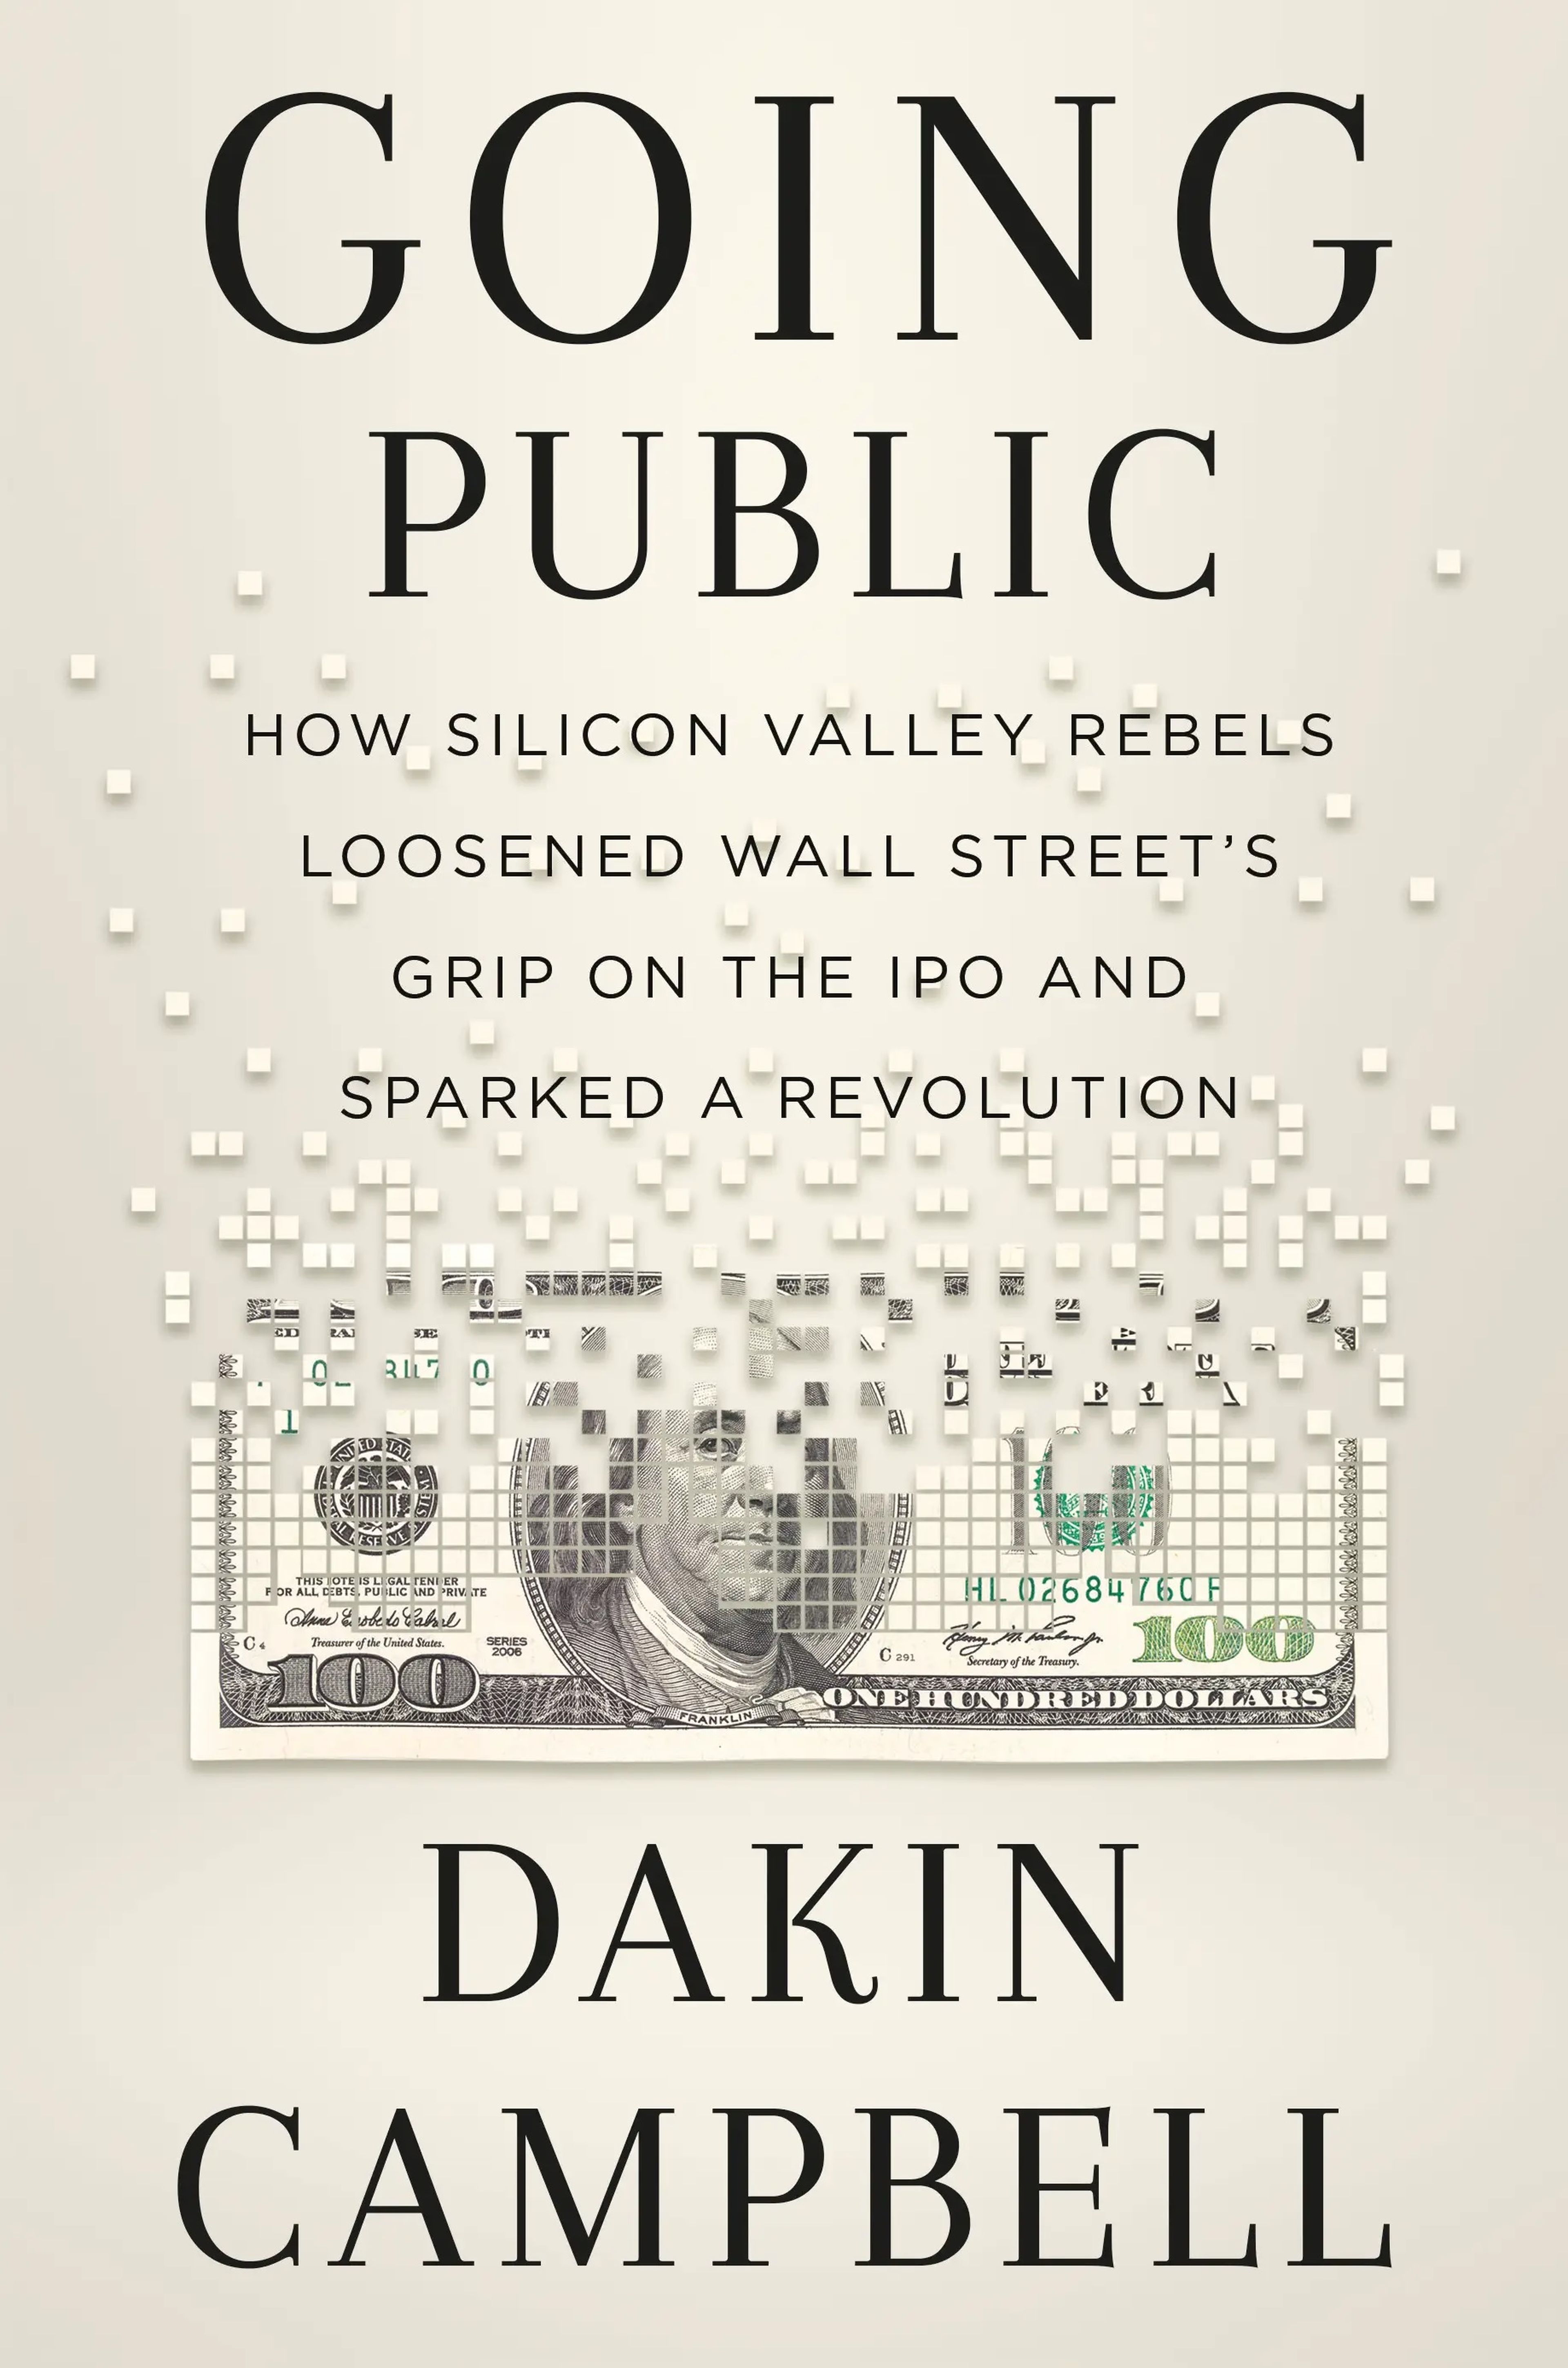 'Salir a Bolsa: Cómo los rebeldes de Silicon Valley provocaron una revolución reduciendo el control de Wall Street sobre las salidas a bolsa.